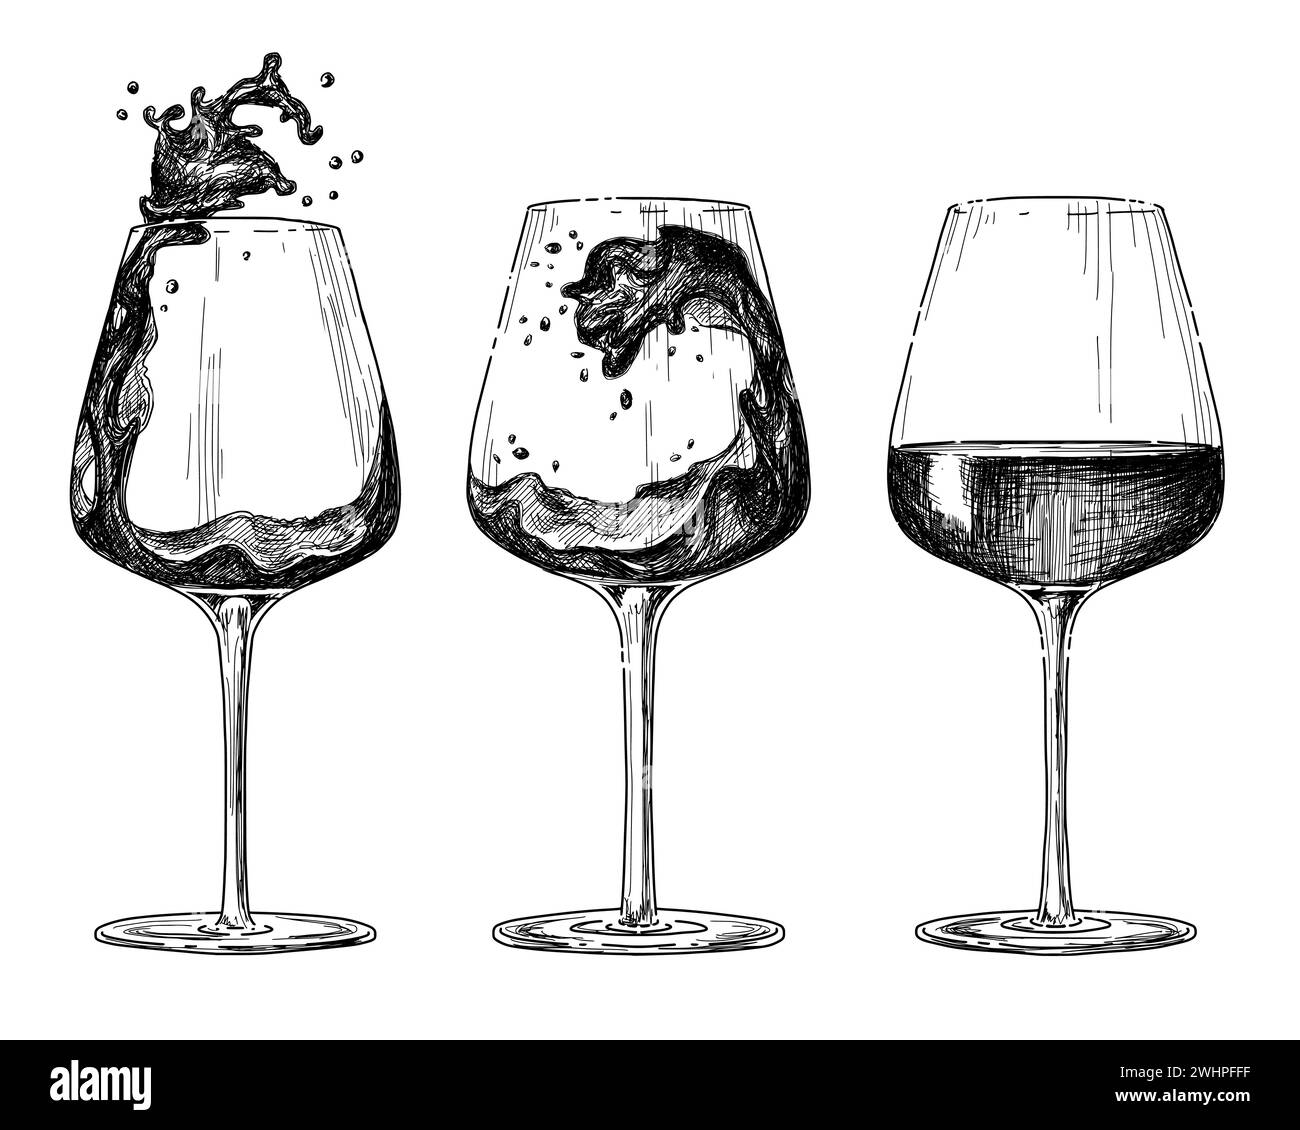 Skizzentinte grafisches Weinglas, Vektorentwurf Silhouettenzeichnung, schwarz auf weißem Hintergrund. Köstliches Vintage-Ätzgetränk-Design. Stock Vektor